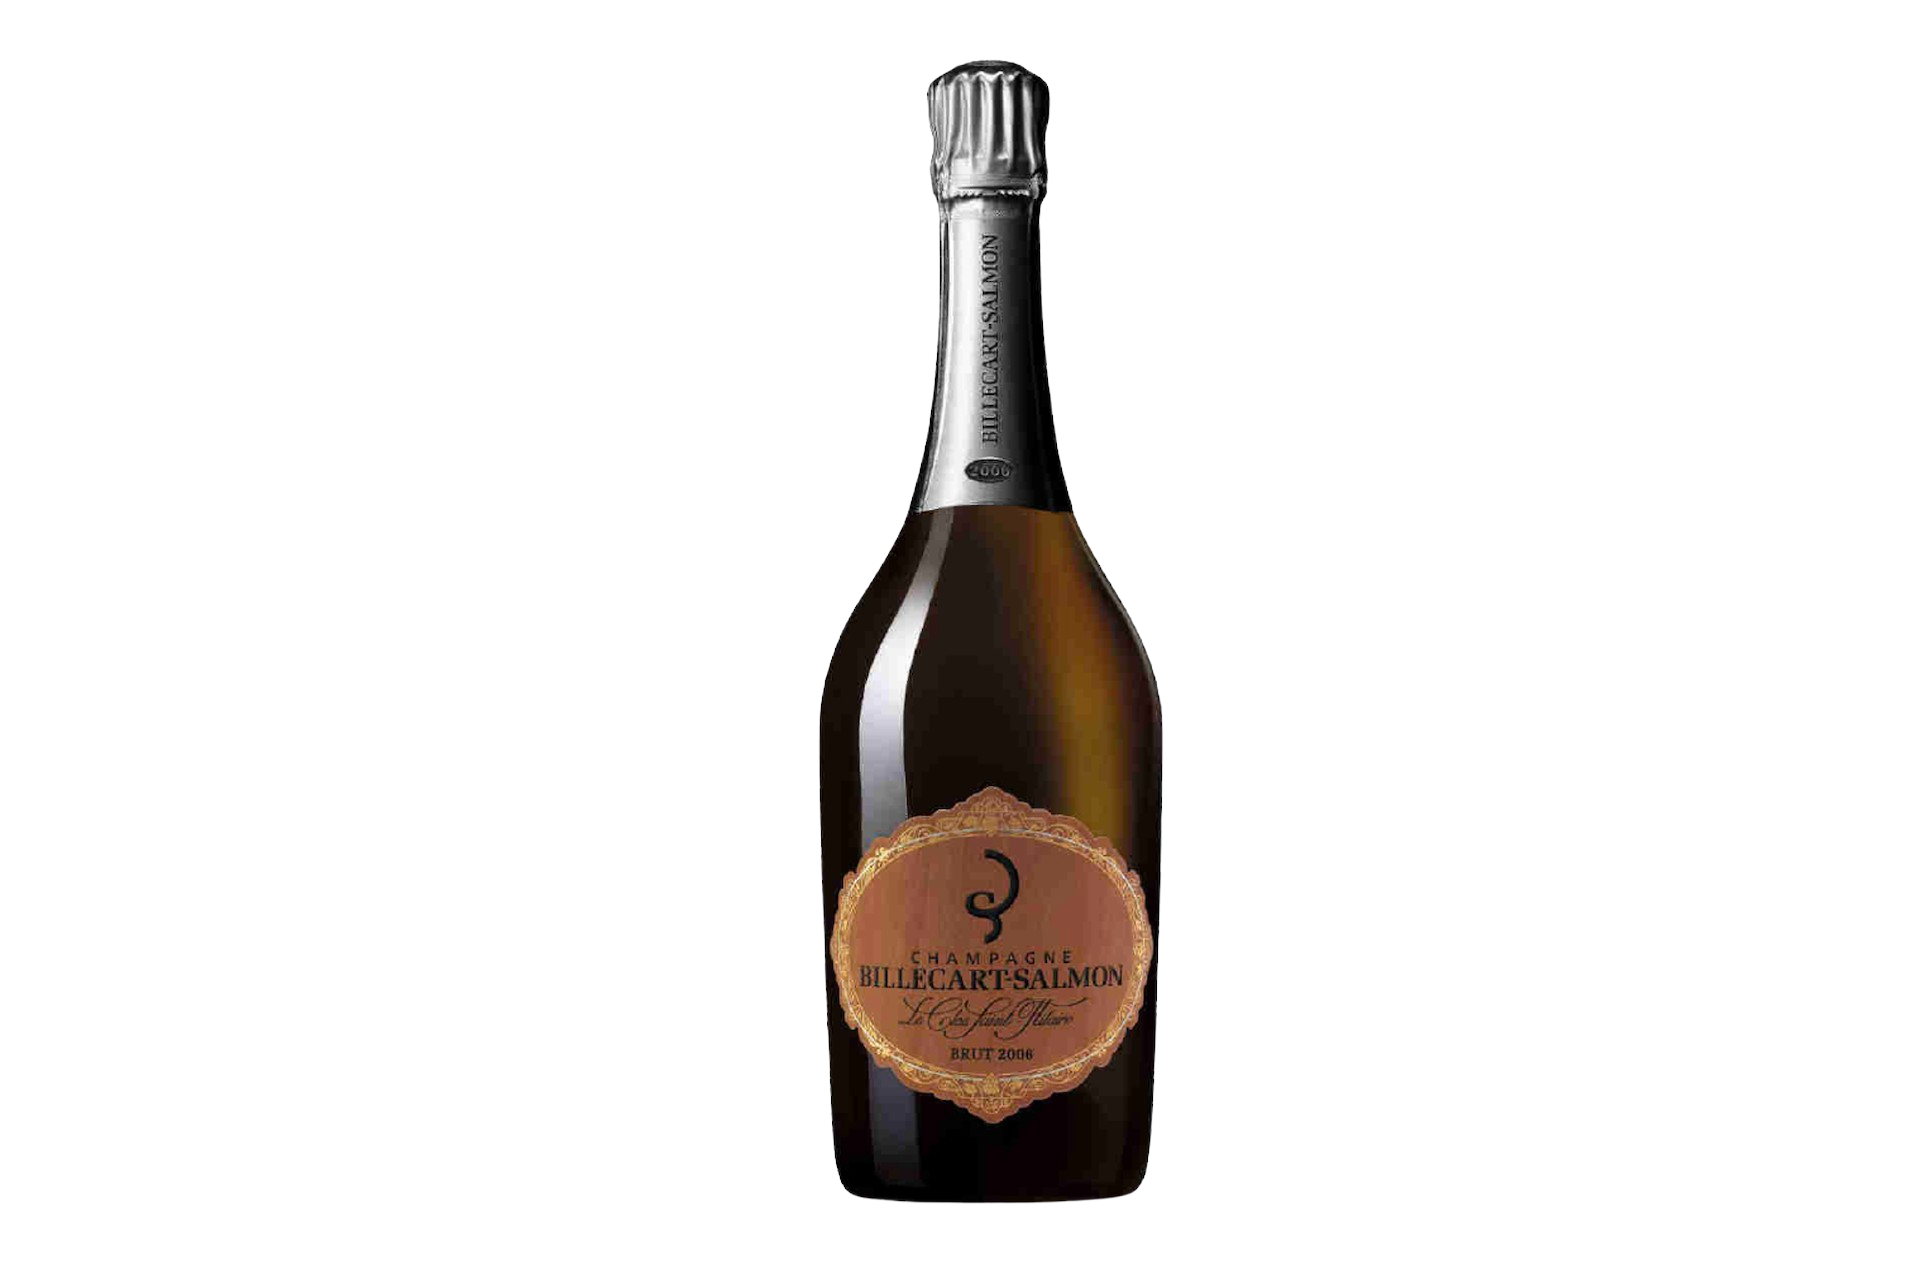 Champagne Billecart-Salmon's Clos Saint-Hilaire 2006